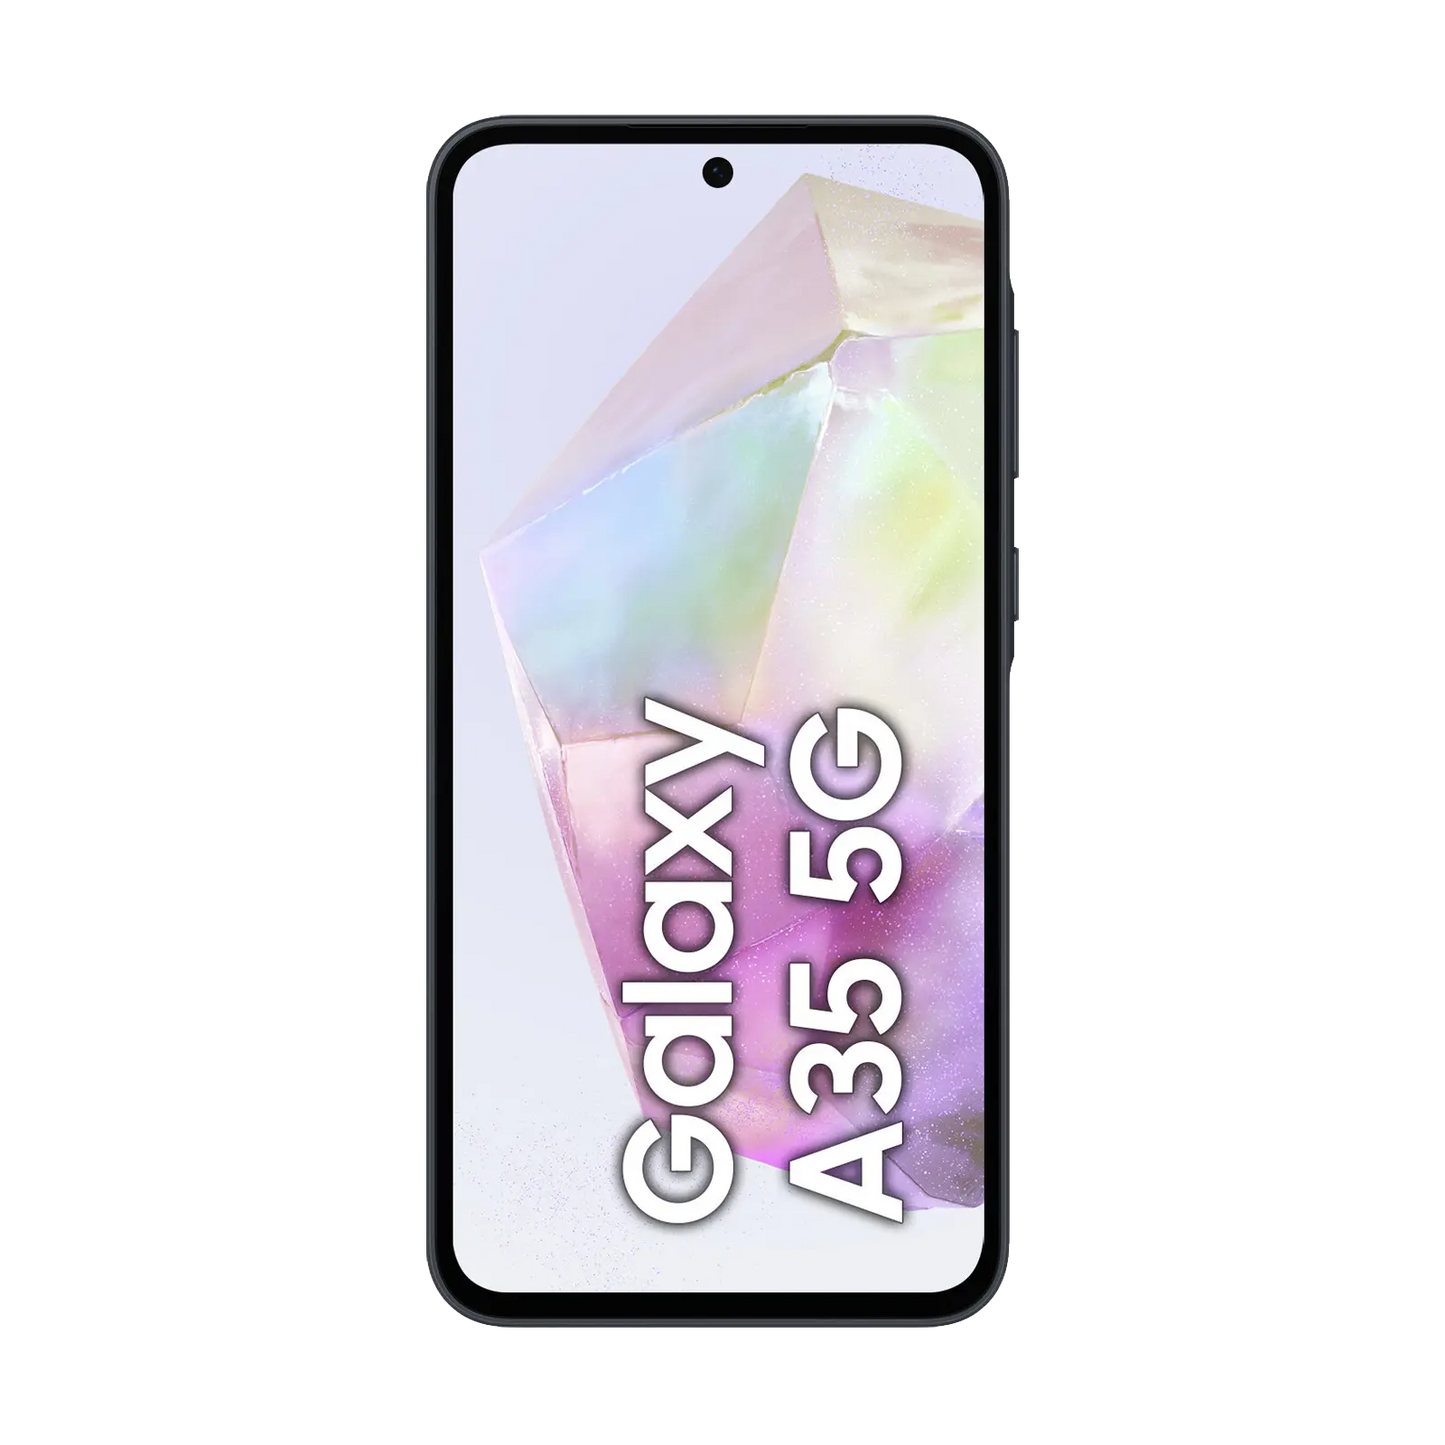 Samsung Galaxy A35 5G od Samsung w SimplyBuy.pl